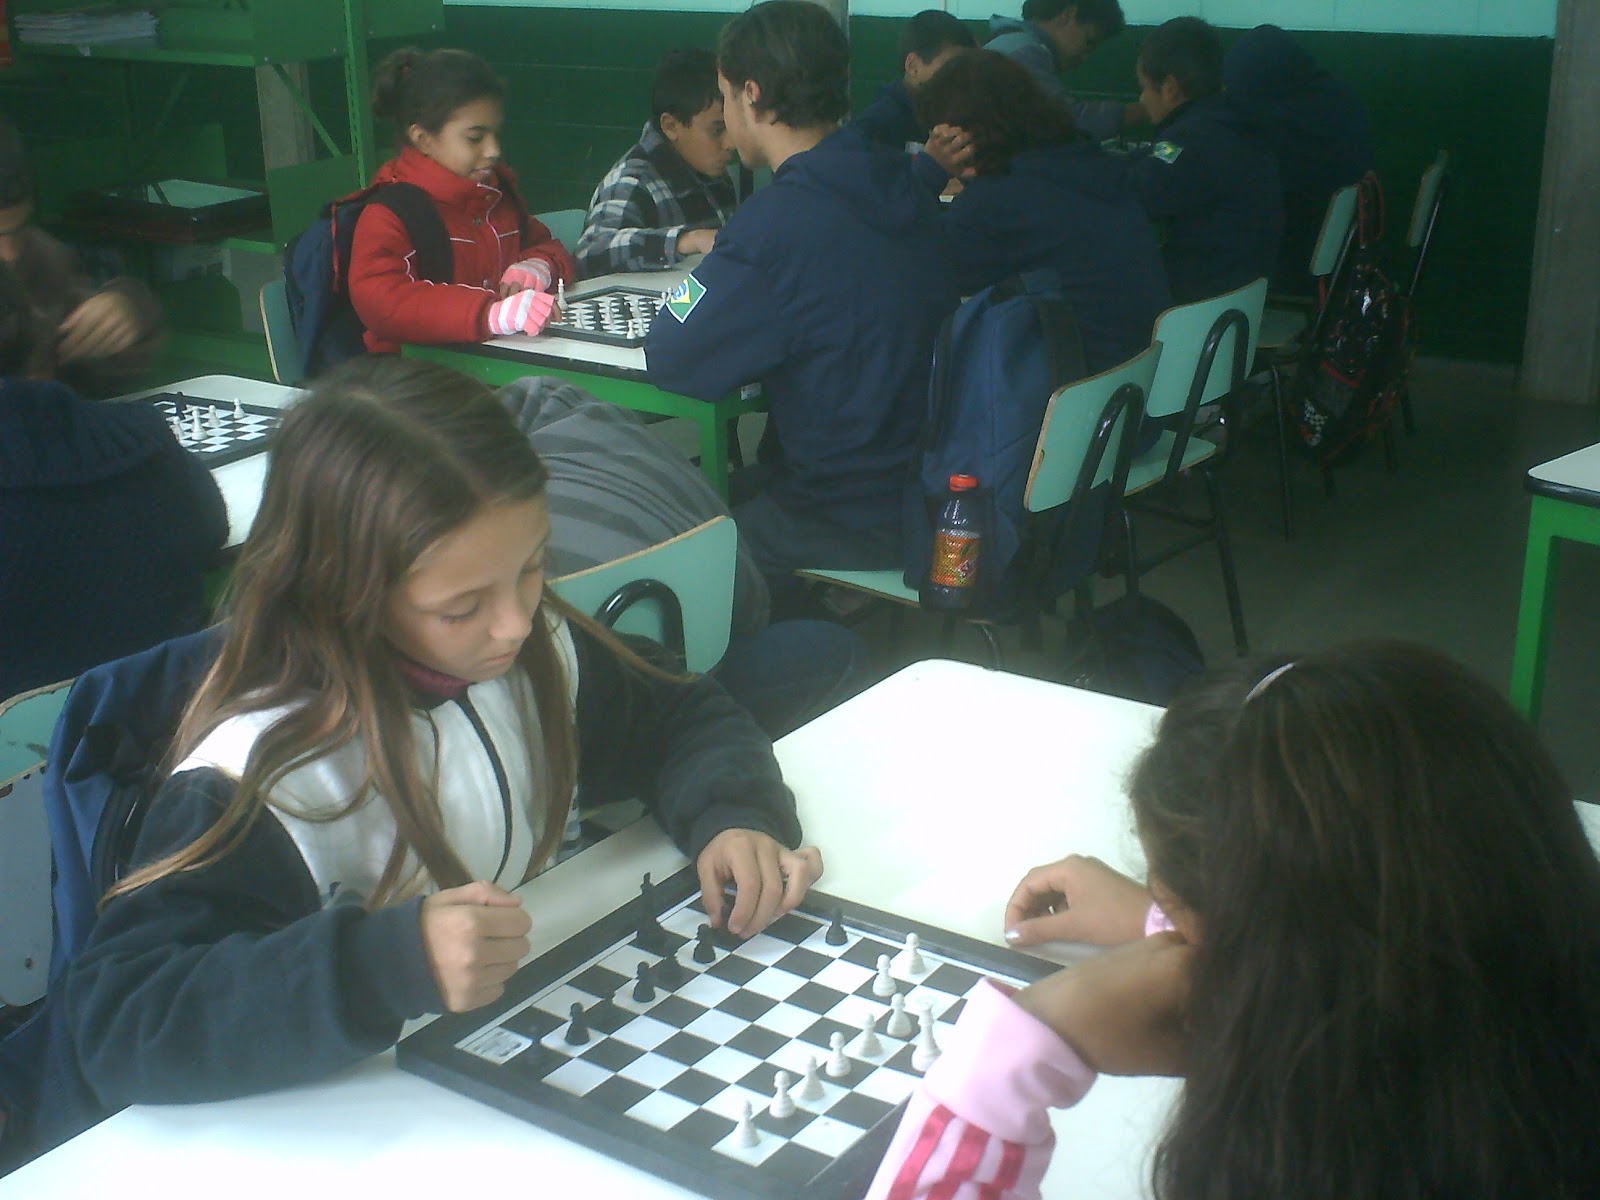 Aulas de Xadrez na Escola Caminho do Sol já é uma realidade